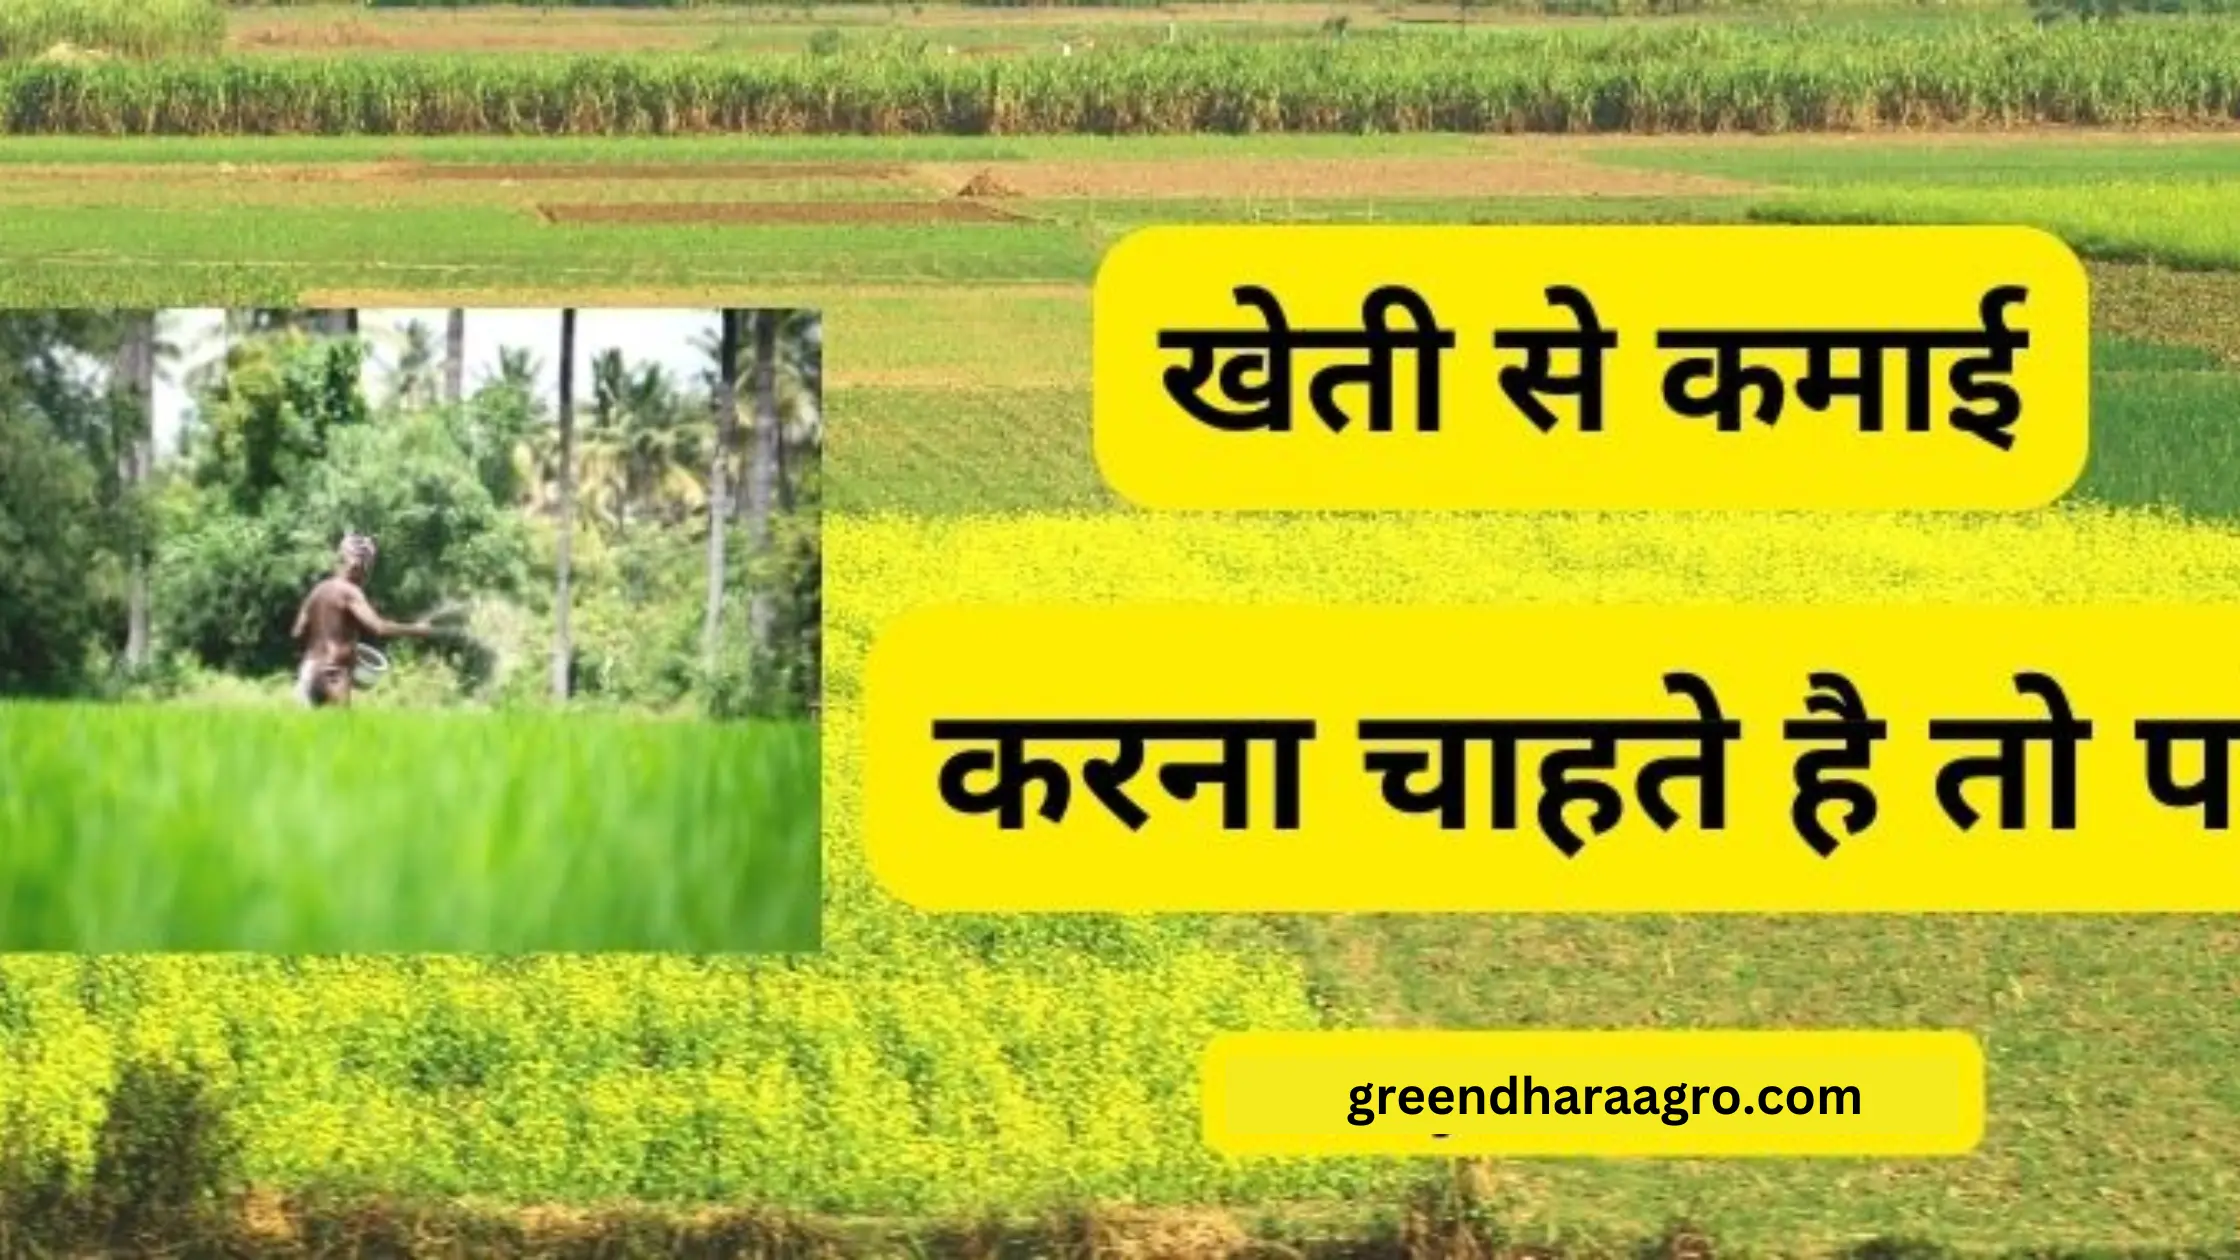 खेती से करोड़पति कैसे बने जानिए | Kheti se Crorepati Kaise Bane